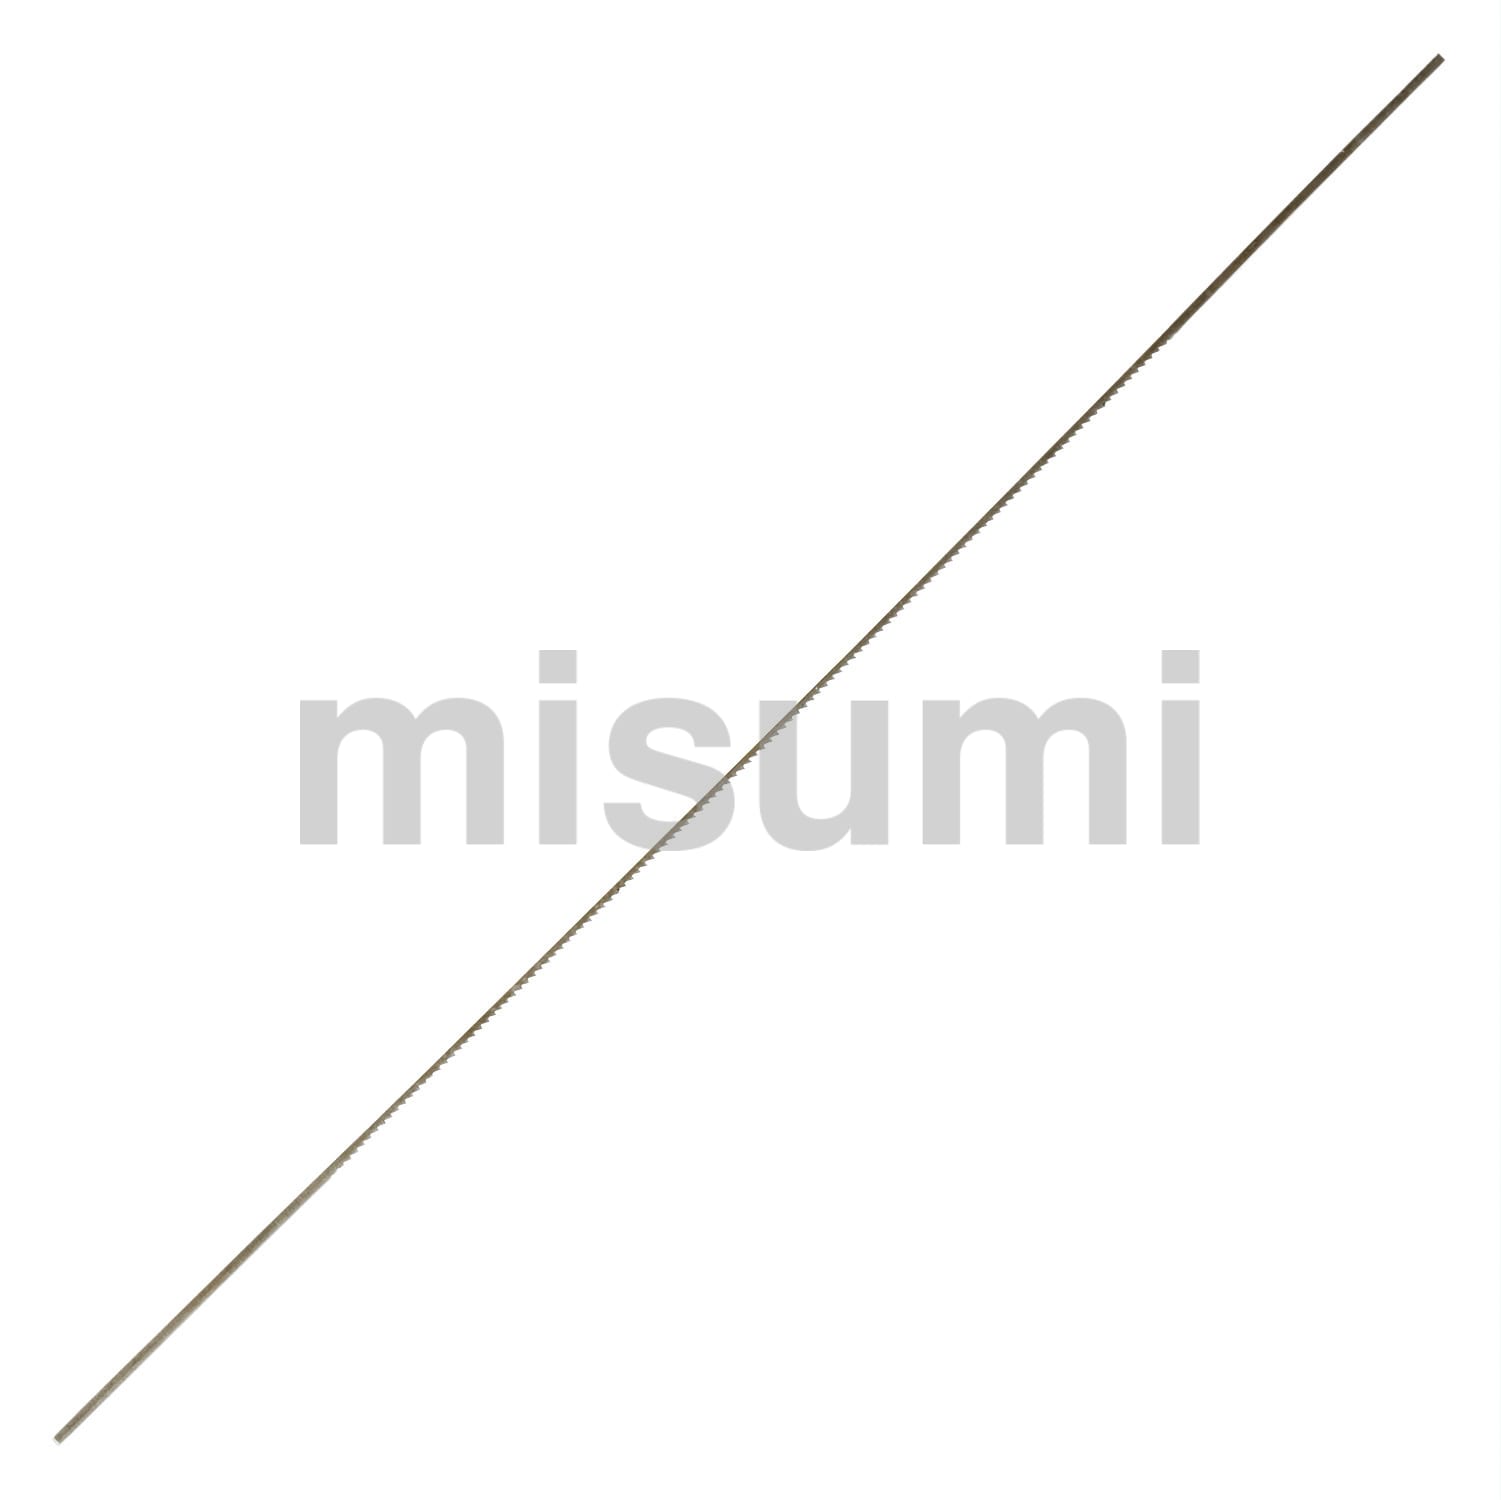 金工鋸用替刃 TNシリーズ エンジニア MISUMI(ミスミ)